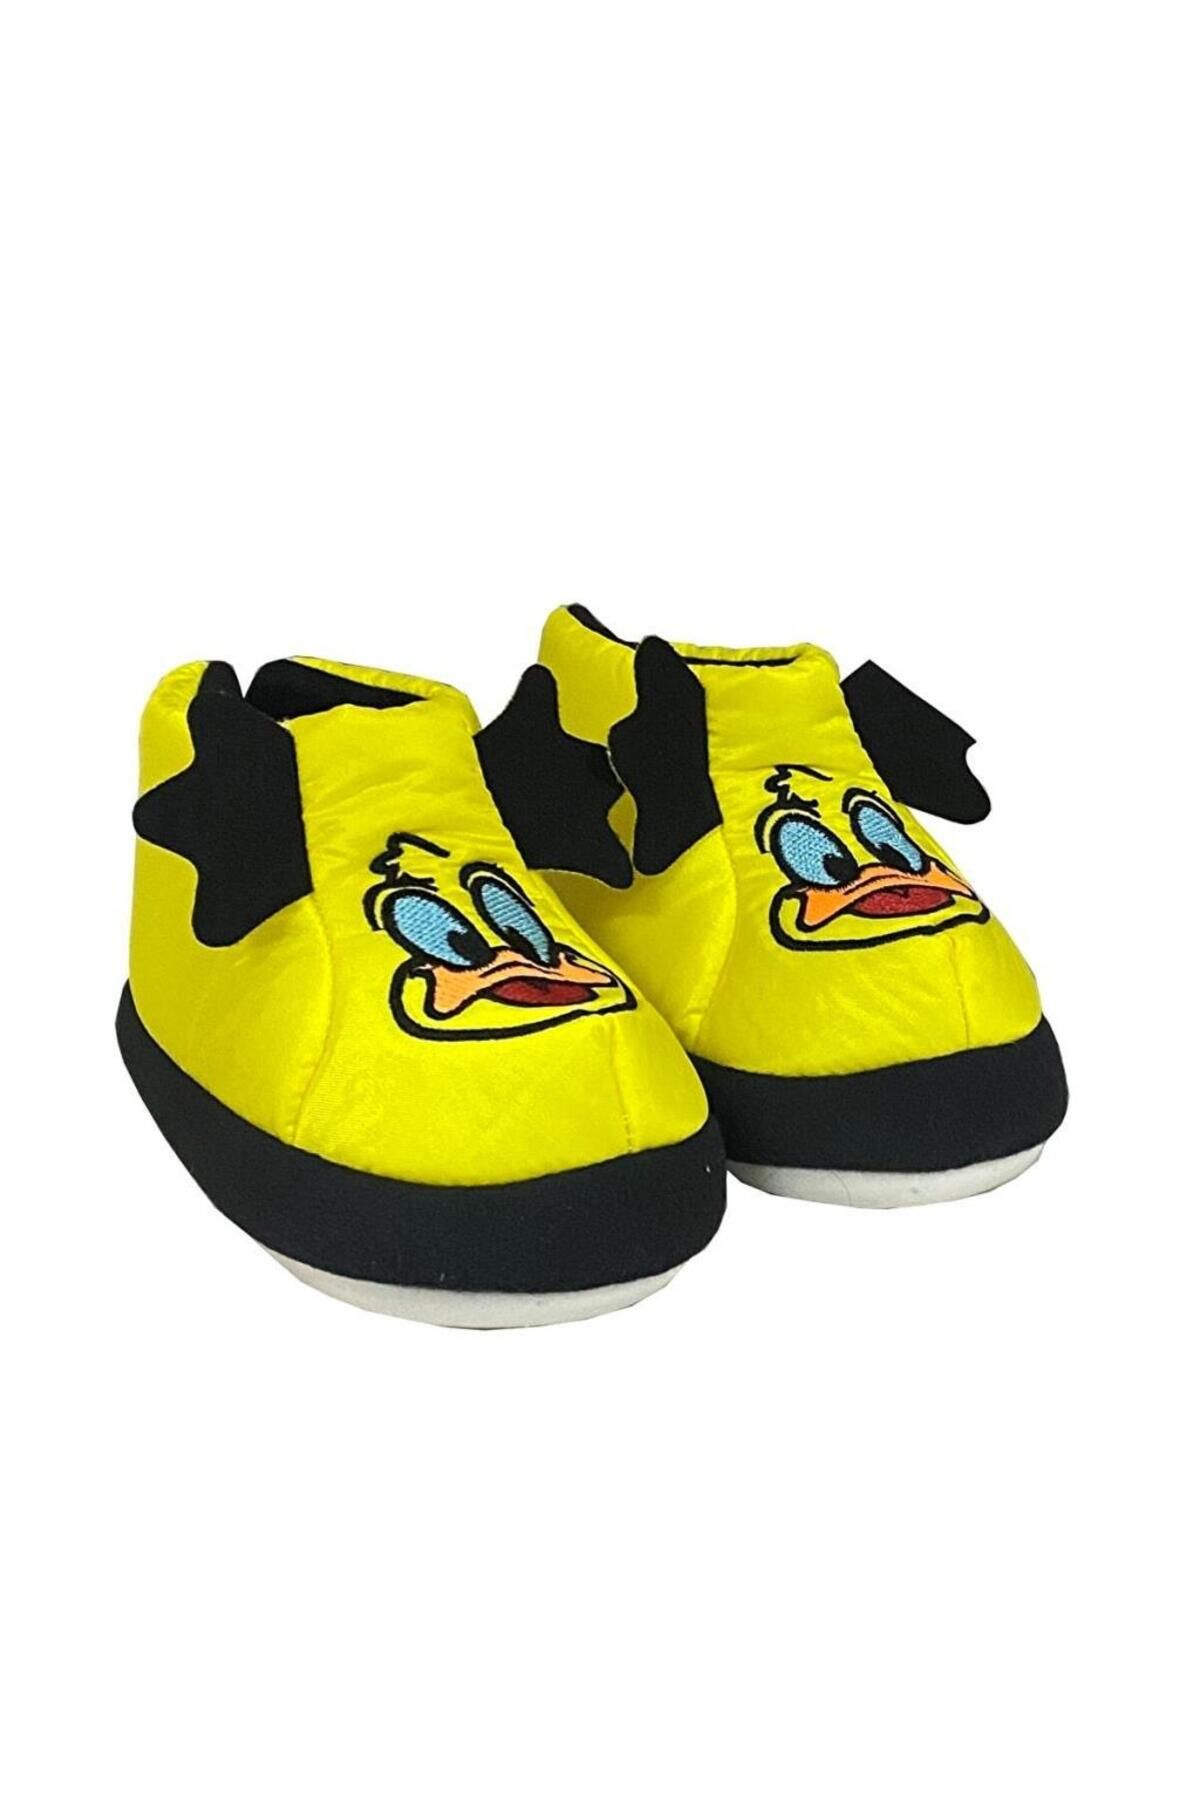 ellaboni Unisex Çocuk Hayvanlı Sarı Ördekli Panduf Anaokulu Ayakkabısı